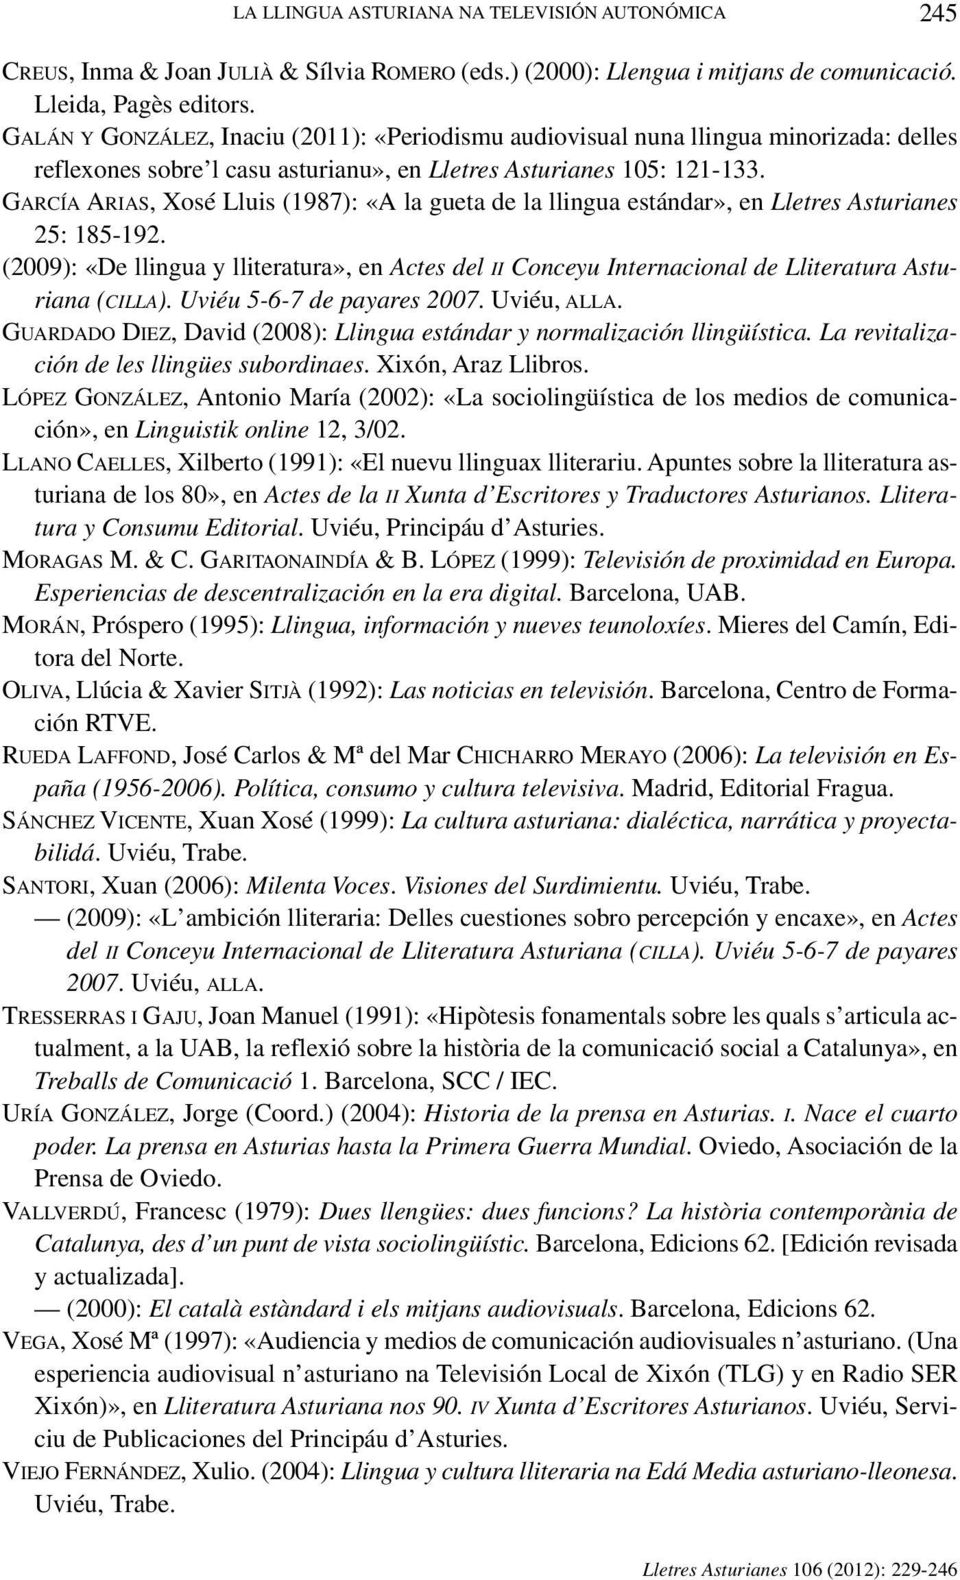 GARCÍA ARIAS, Xosé Lluis (1987): «A la gueta de la llingua estándar», en Lletres Asturianes 25: 185-192.